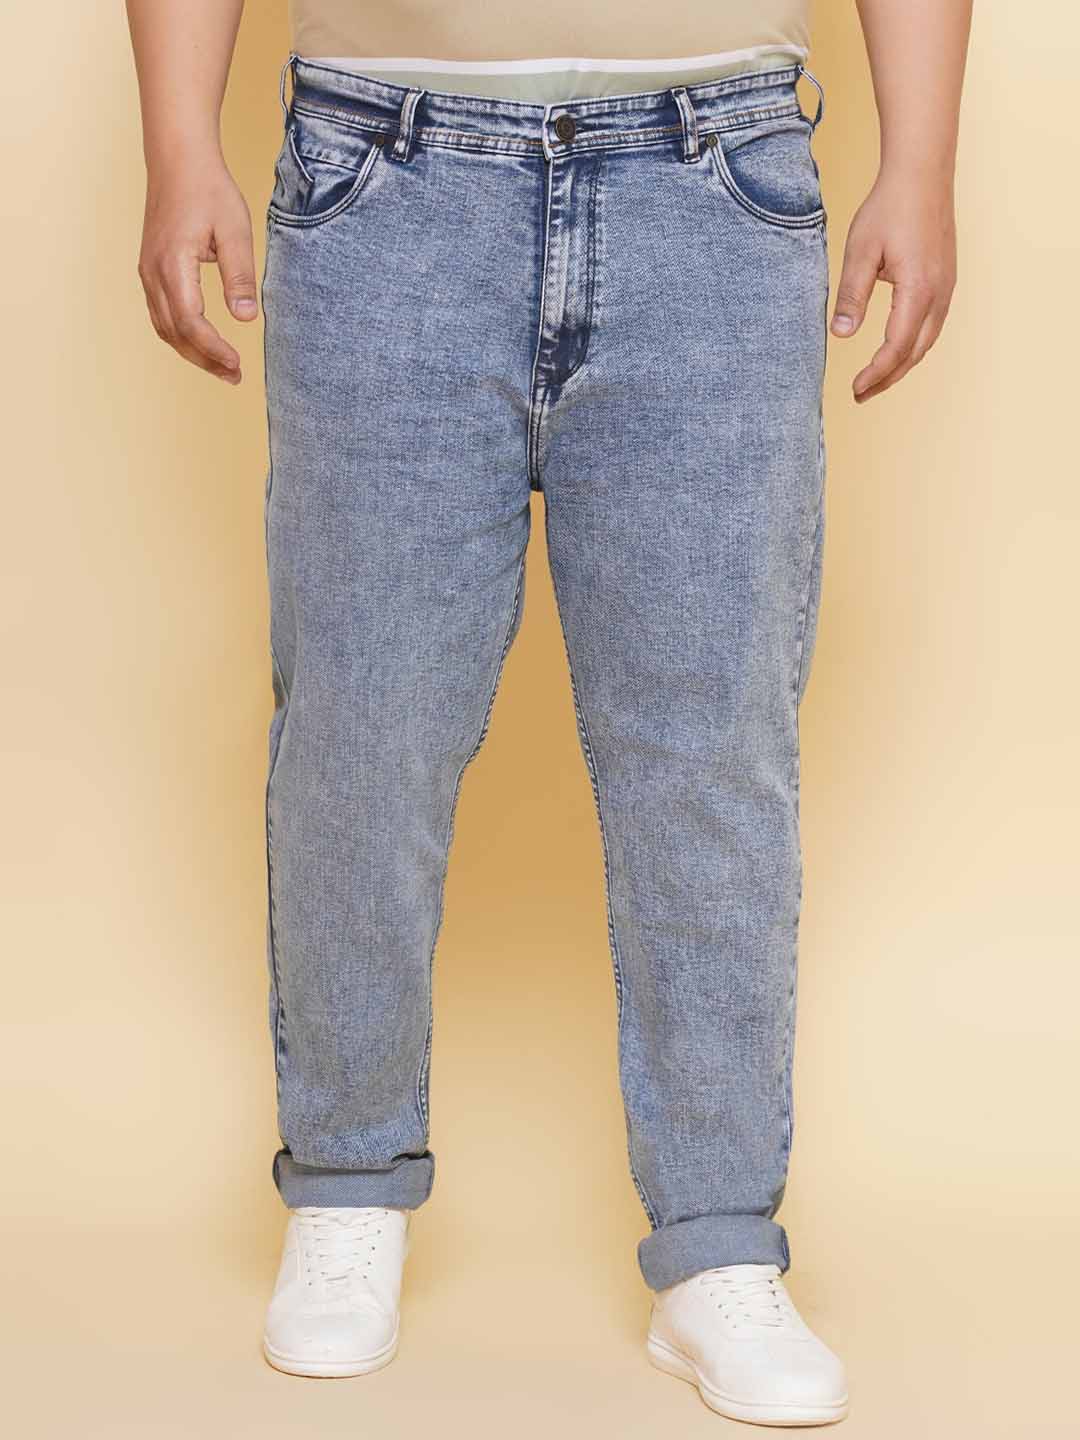 bottomwear/jeans/JPJ27115/jpj27115-1.jpg